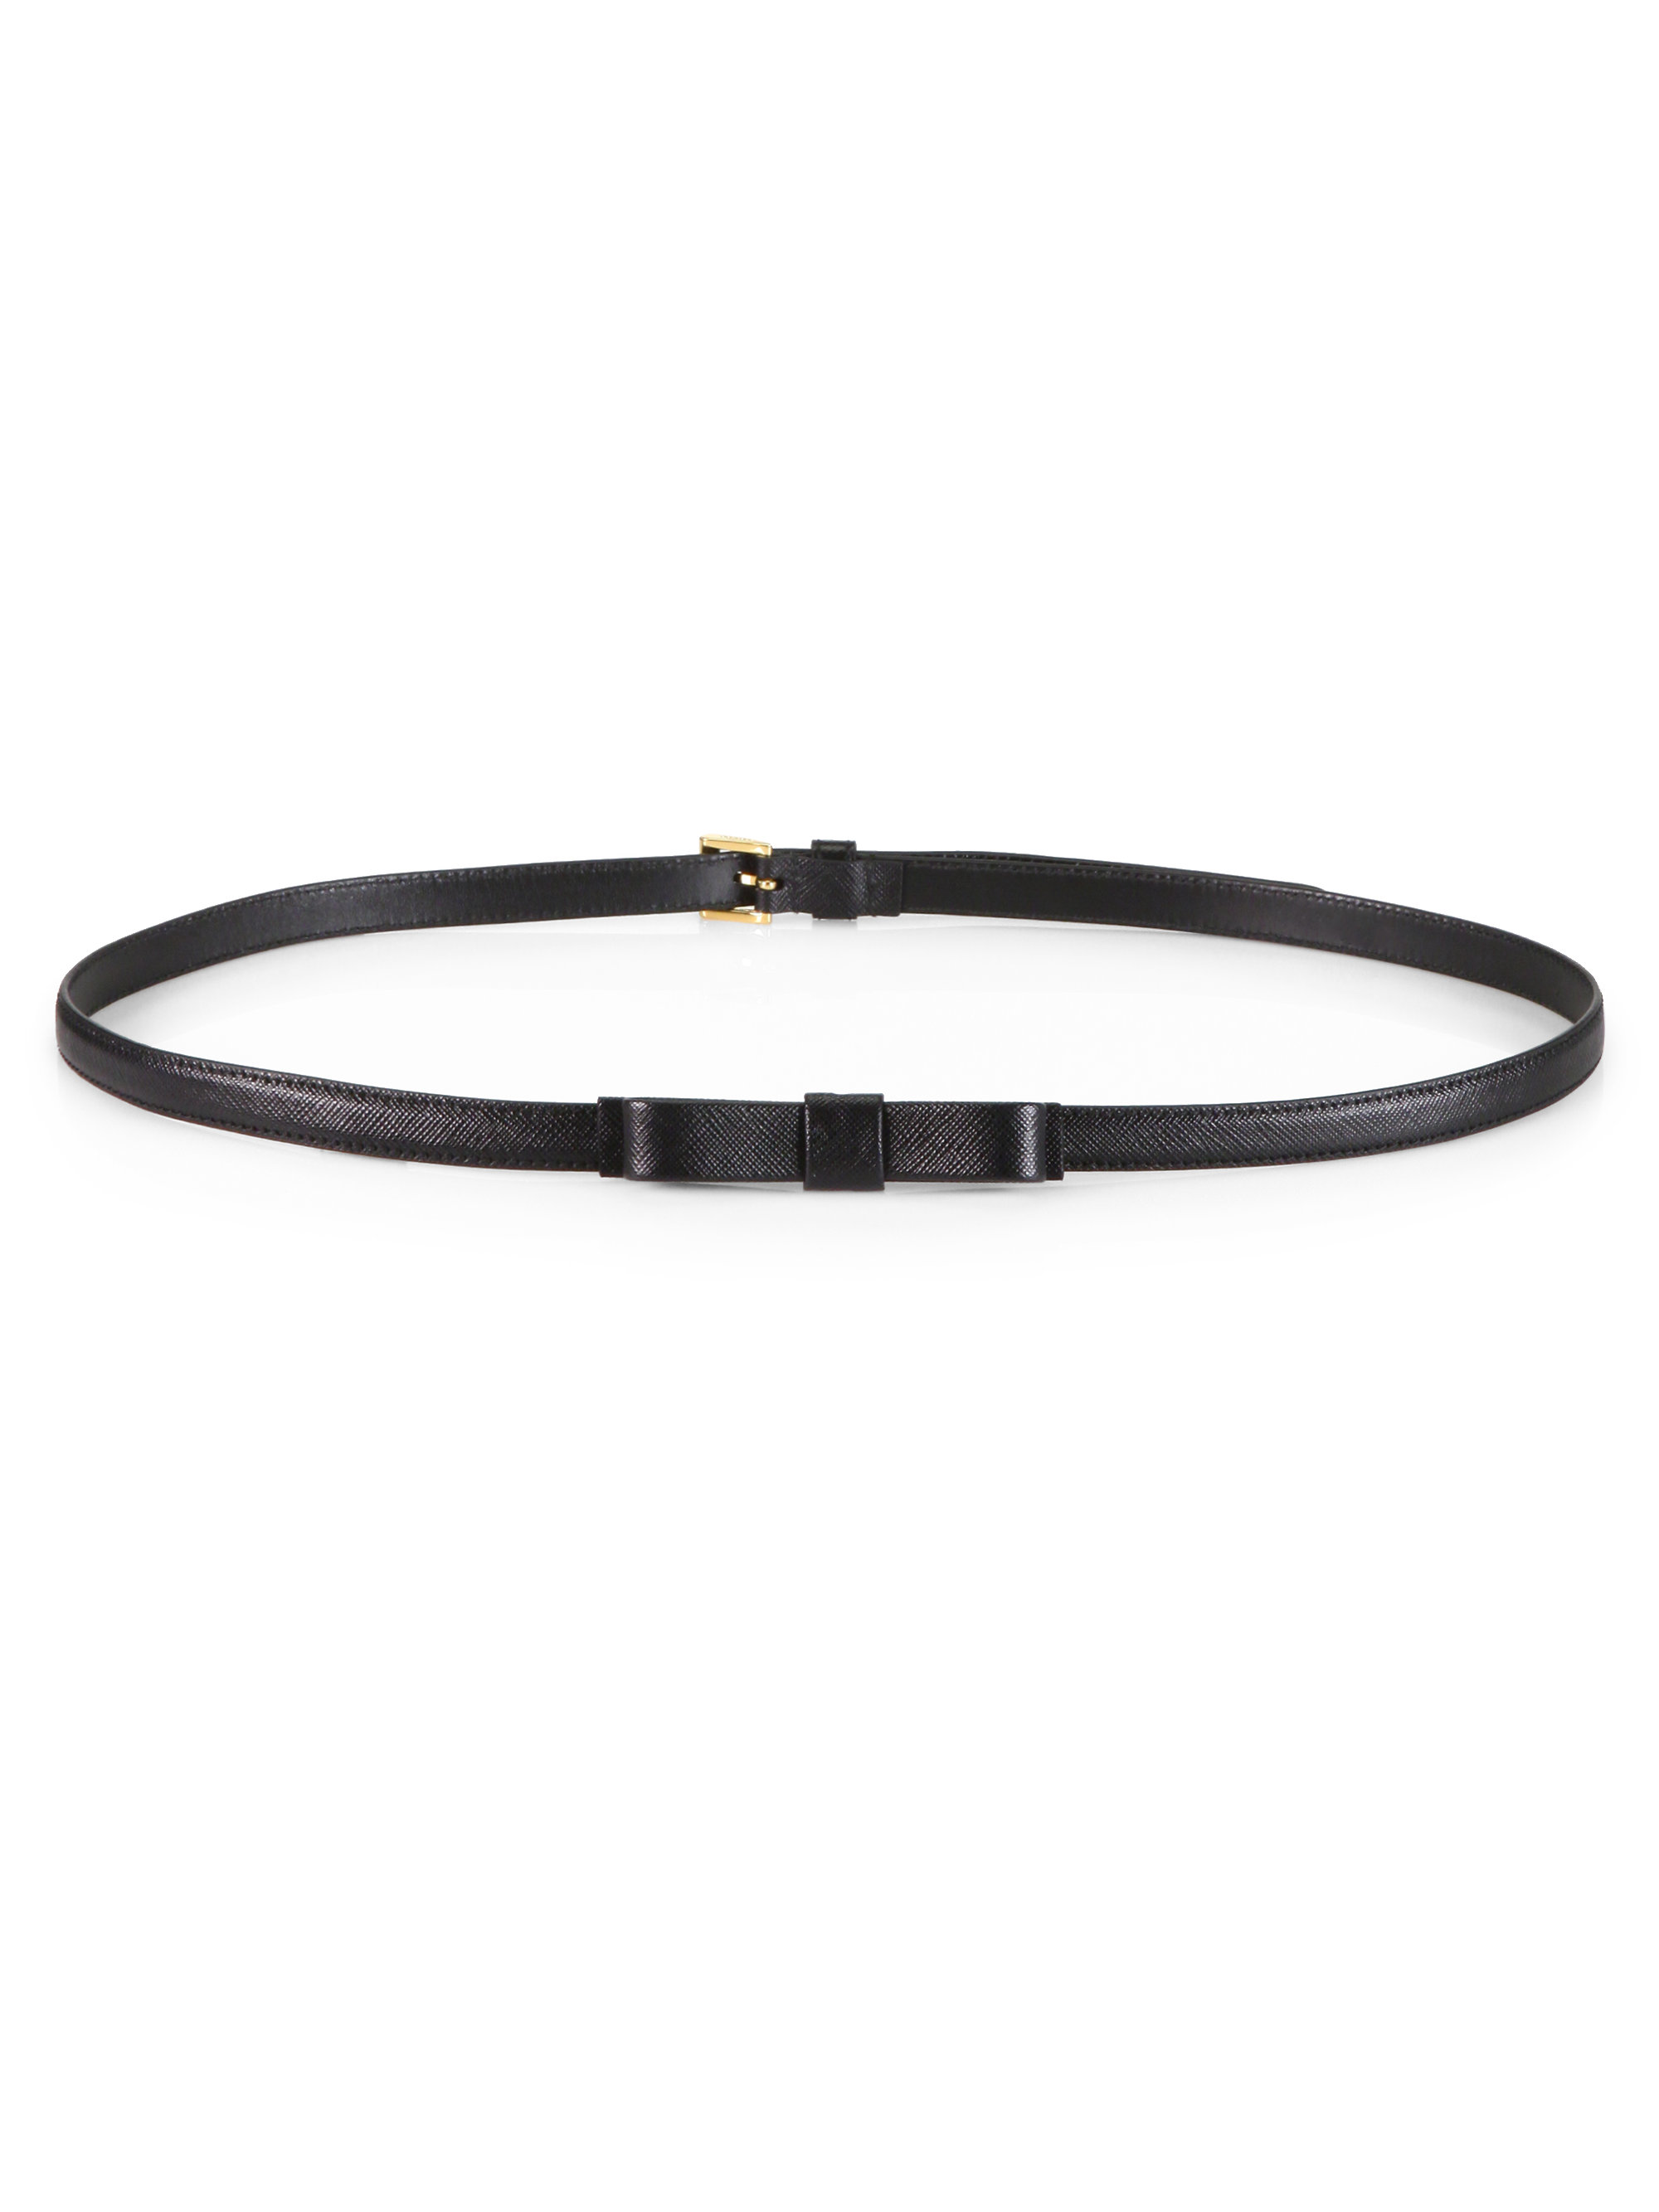 Prada Saffiano Bow Belt in Black | Lyst  